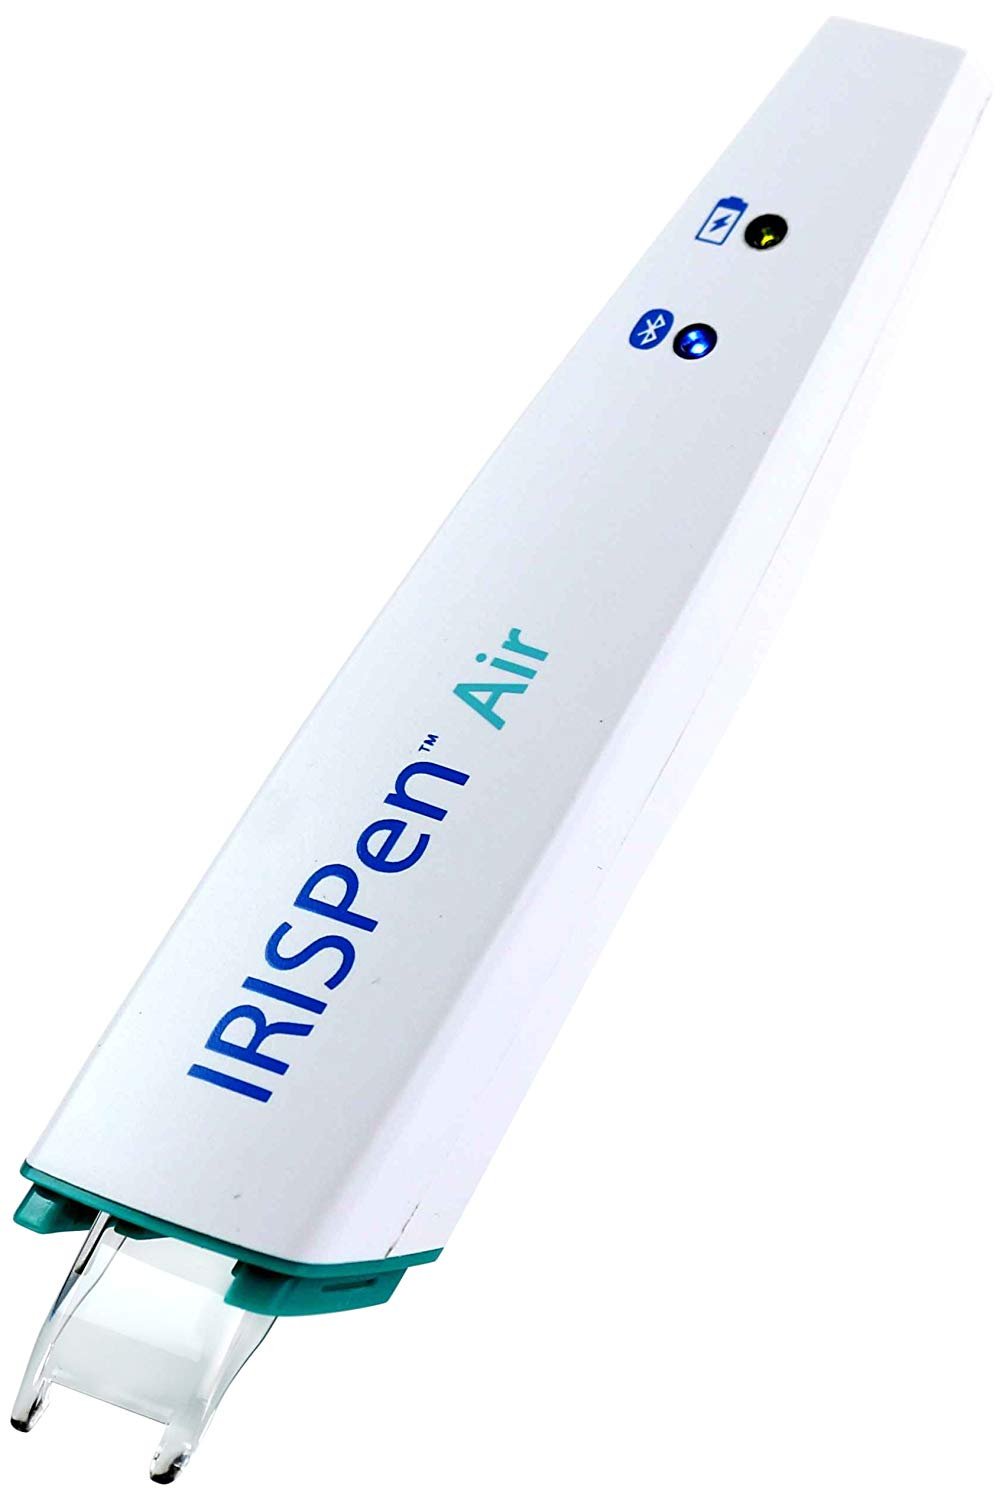 IRISPen Air 7 Wireless Digital Highlighter Pen Scanner 2